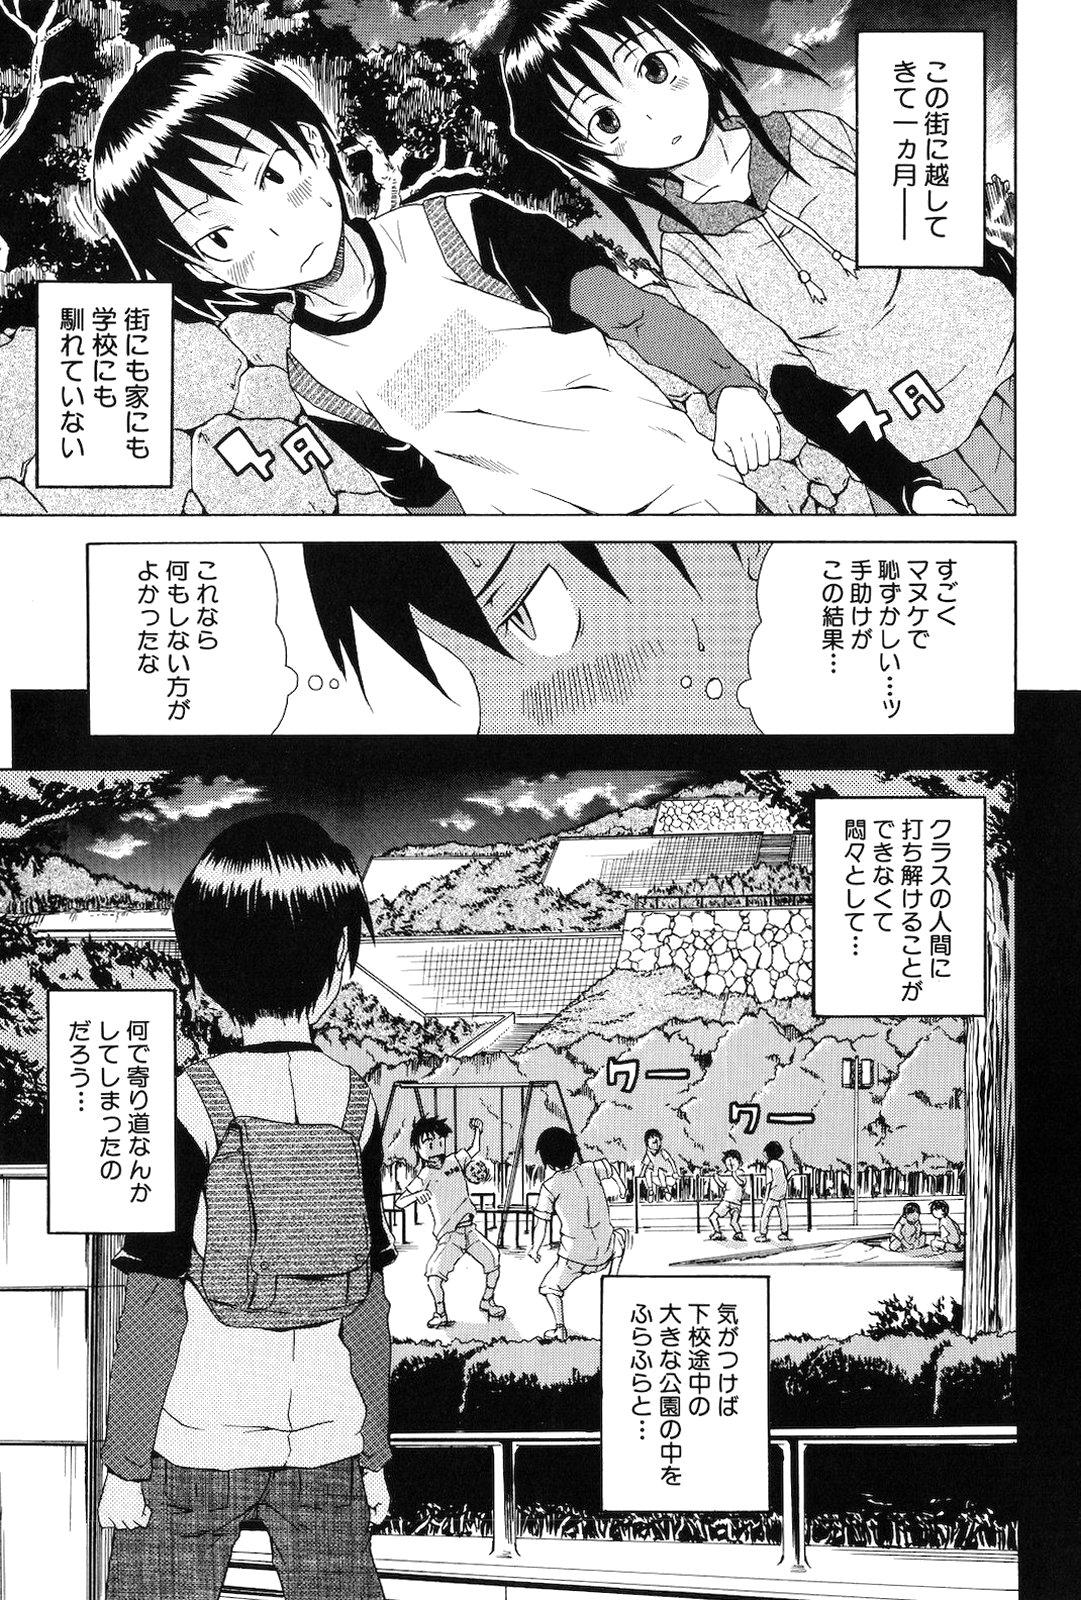 Cheating Kodukuri Gokko Amiga - Page 7